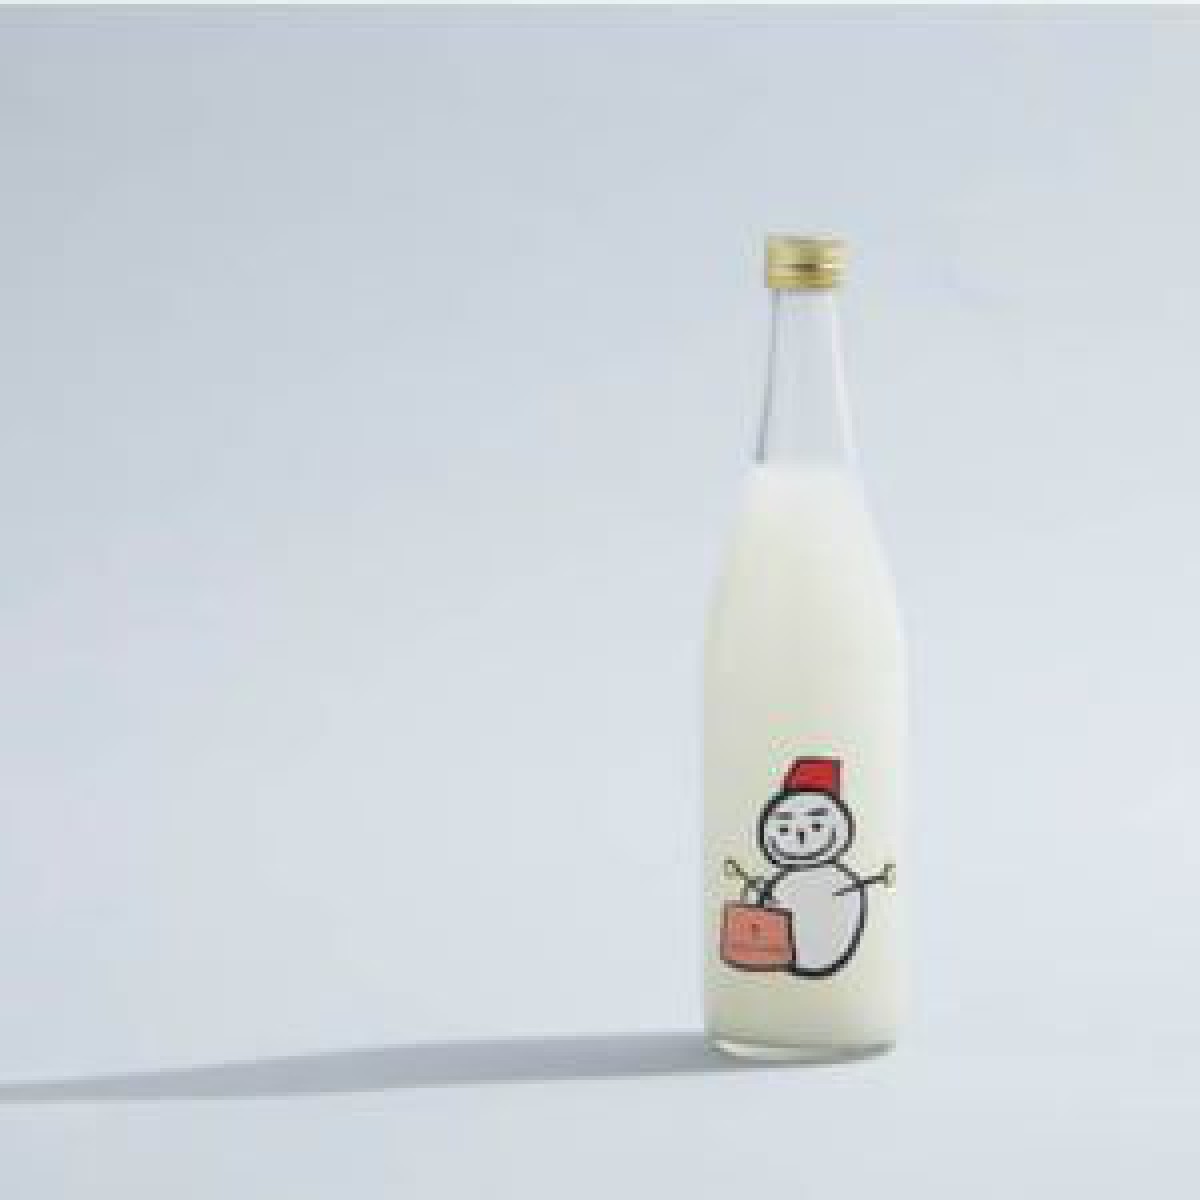 ユナイテッドアローズが酒蔵「仙禽」とコラボ、冬季限定の日本酒をクリスマスイブに発売